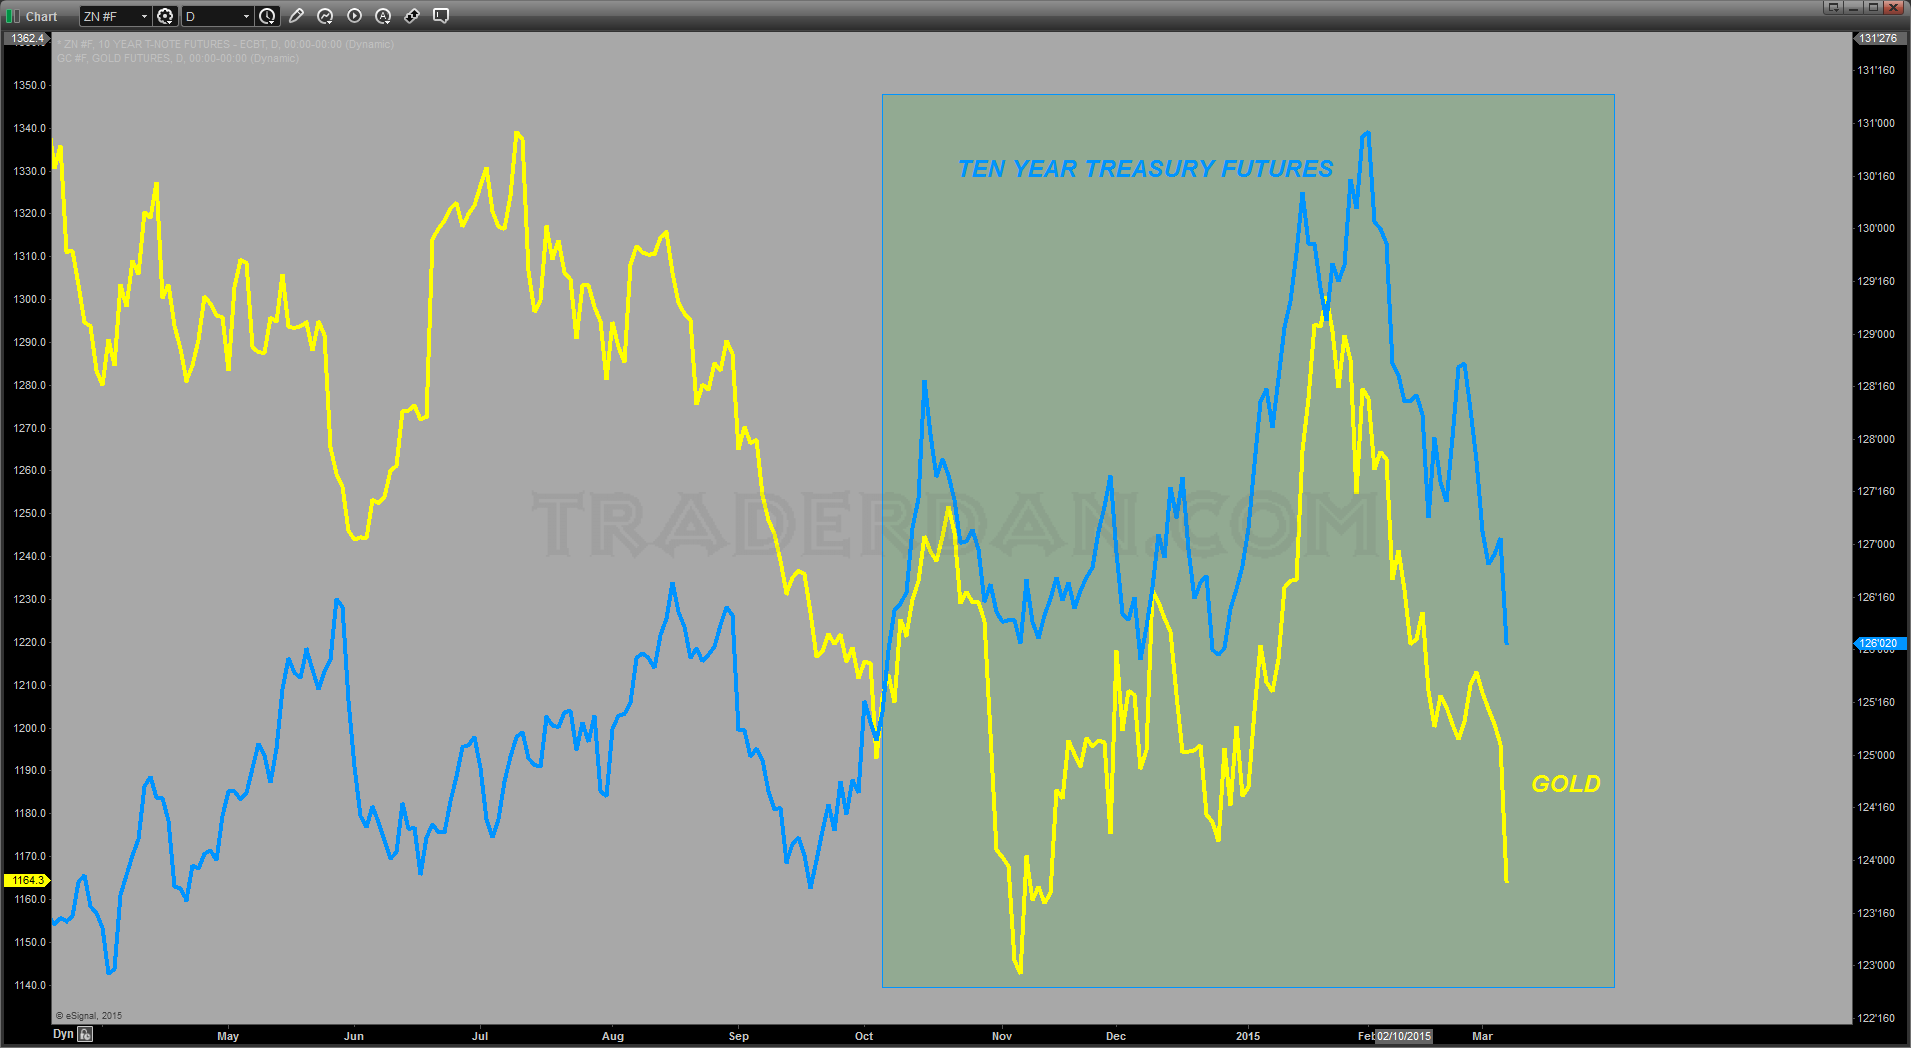 10-Y Treasury Futures vs Gold